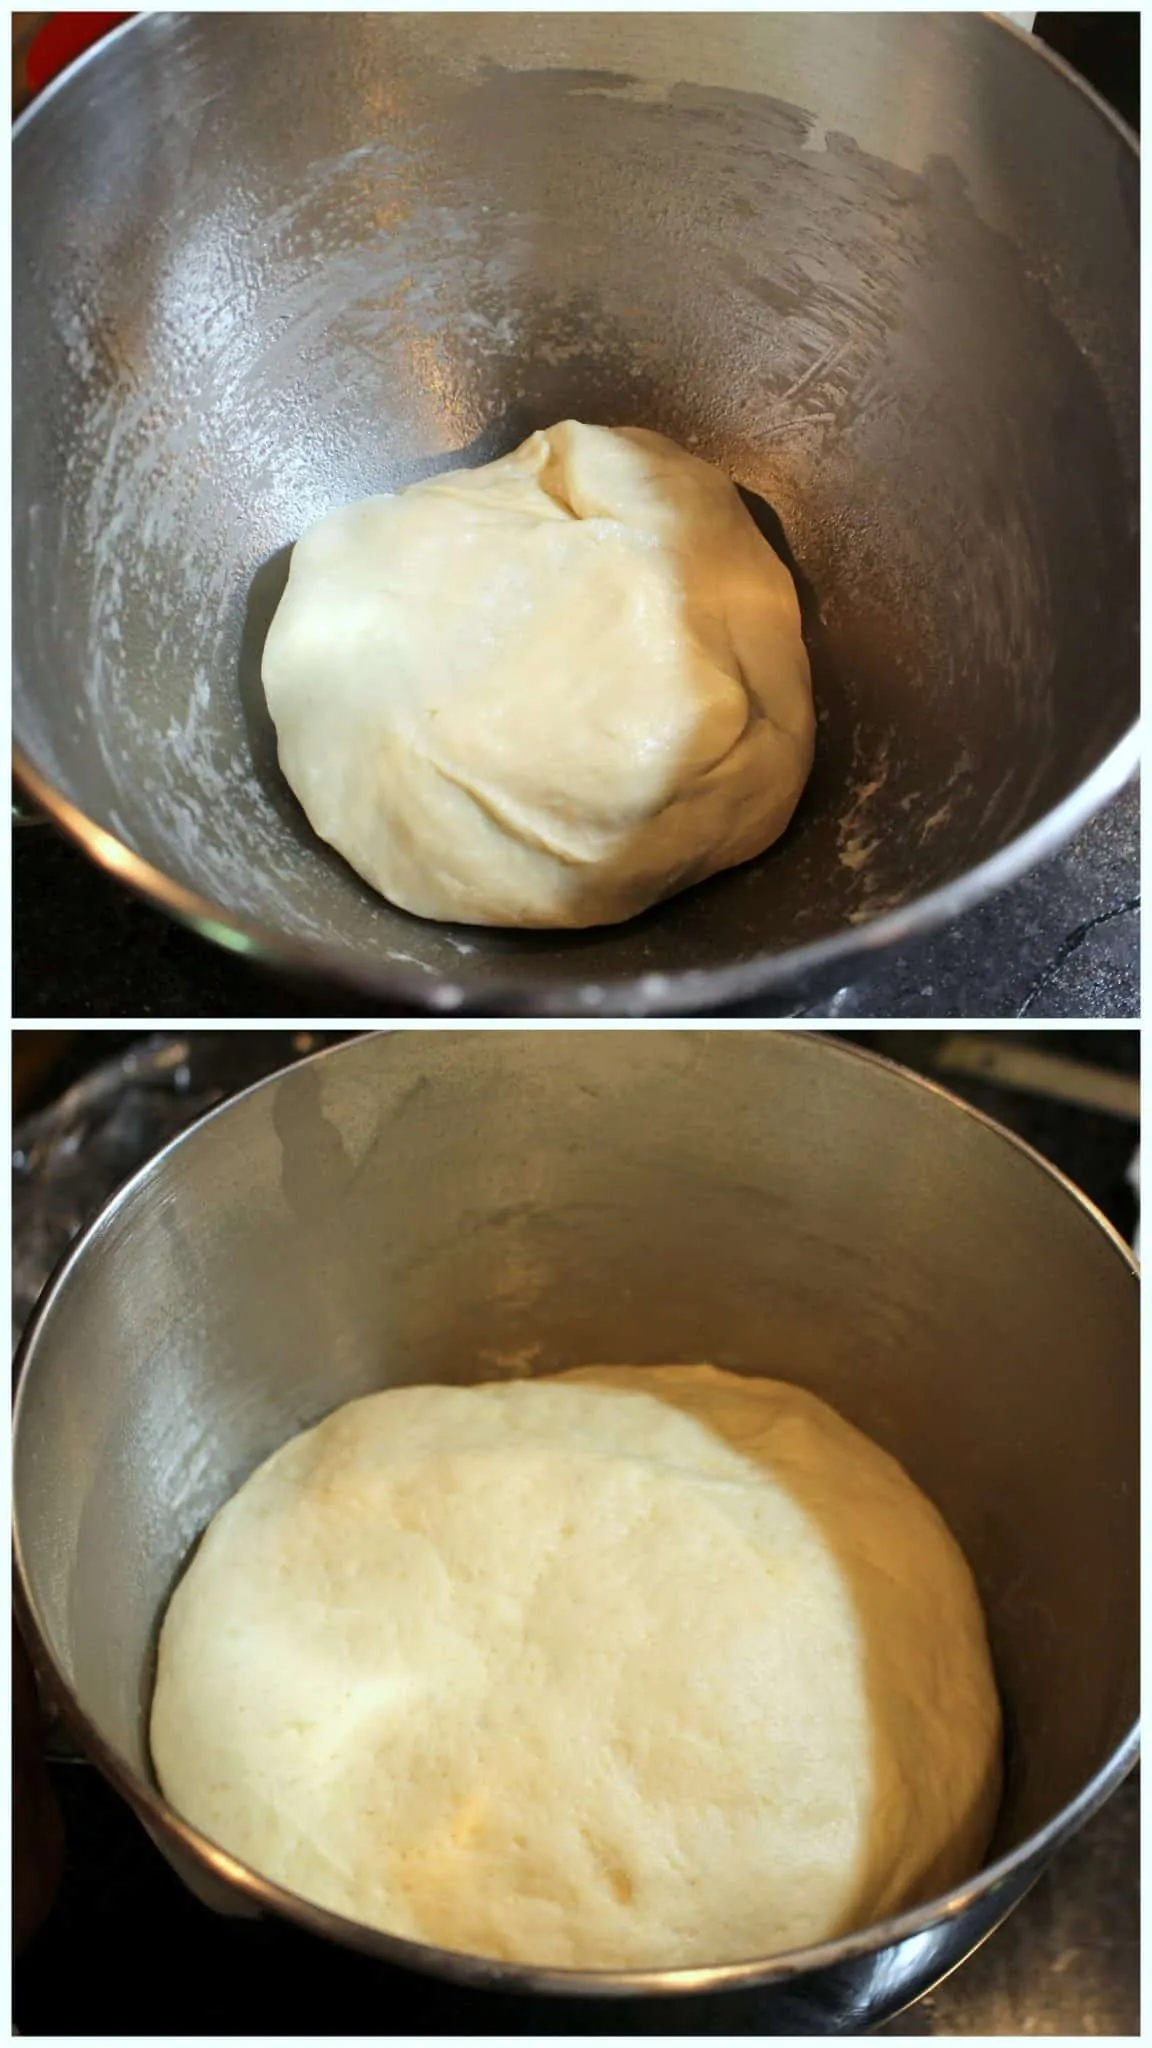 Dough kept for rising